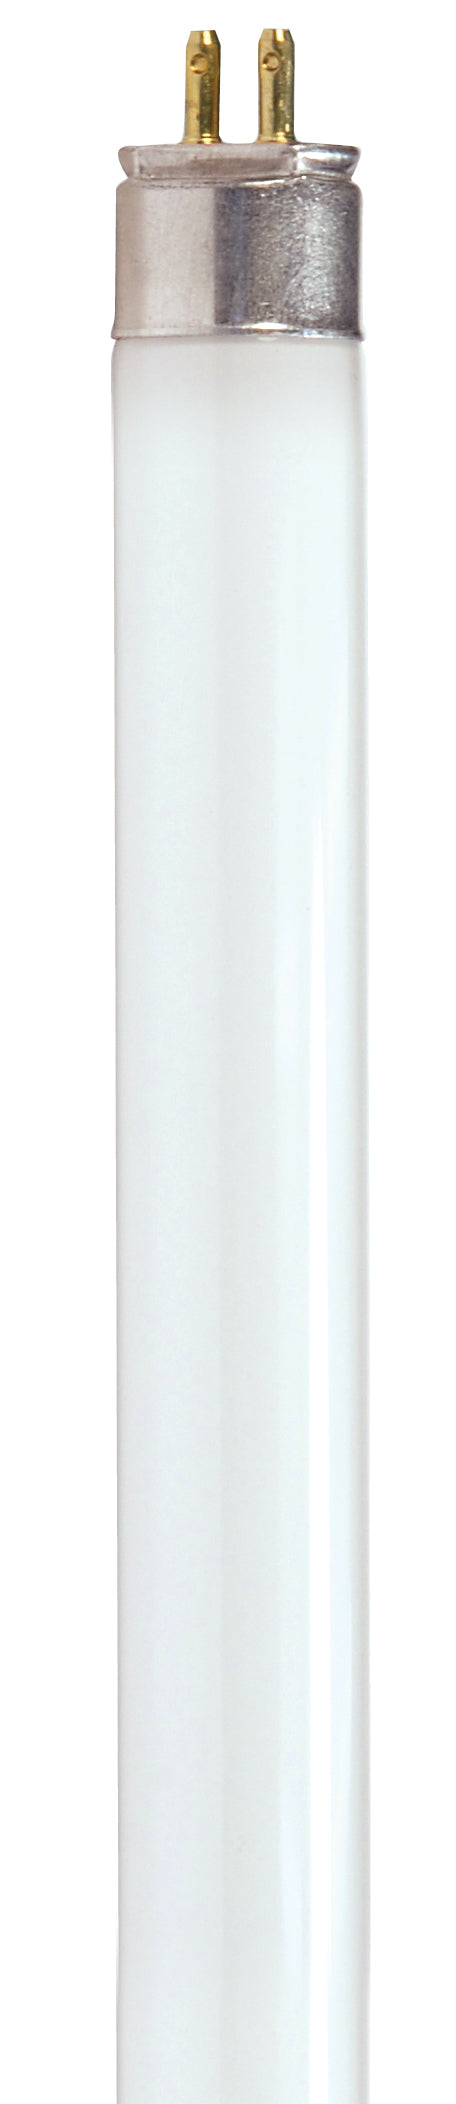 SATCO/NUVO HyGrade 14W T5 Fluorescent 3000K Warm White 85 CRI Miniature Bi-Pin Base (S8125)